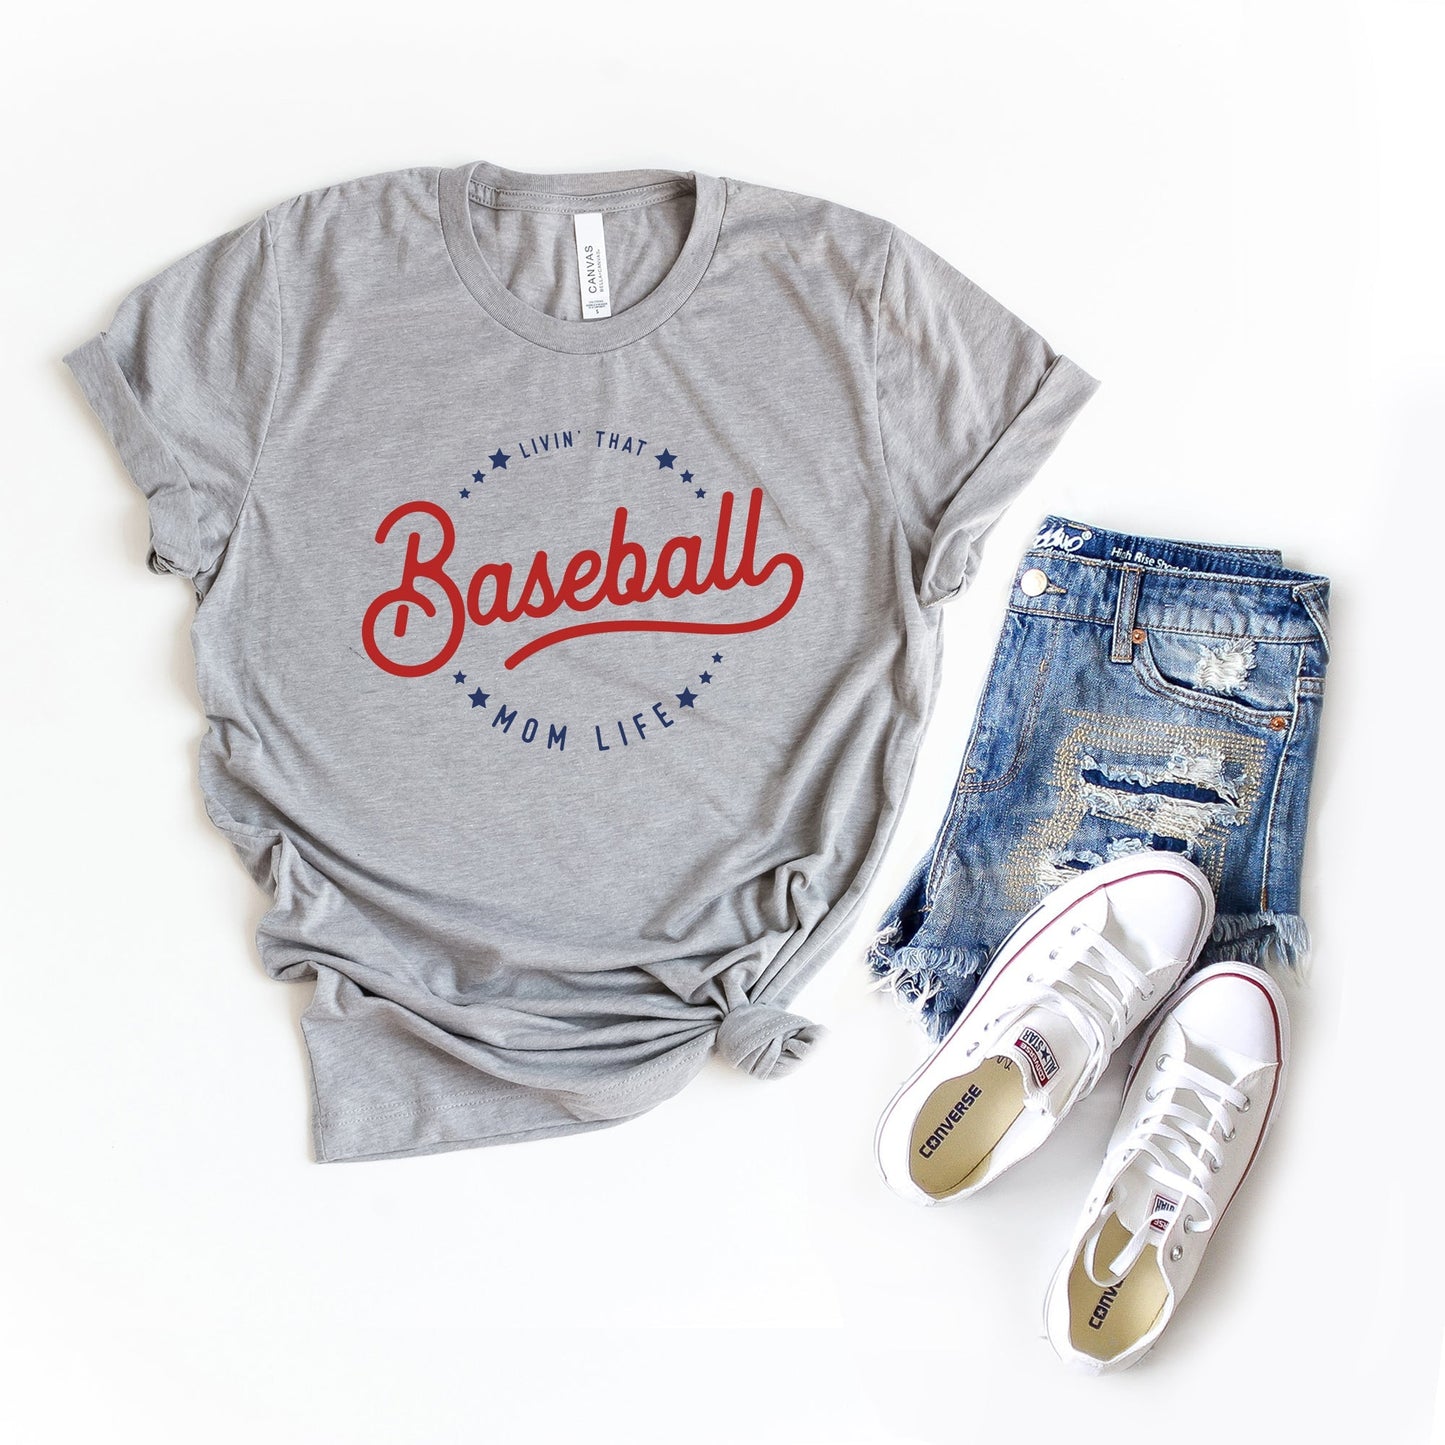 Livin' That Baseball Mom Life | Short Sleeve Crew Neck